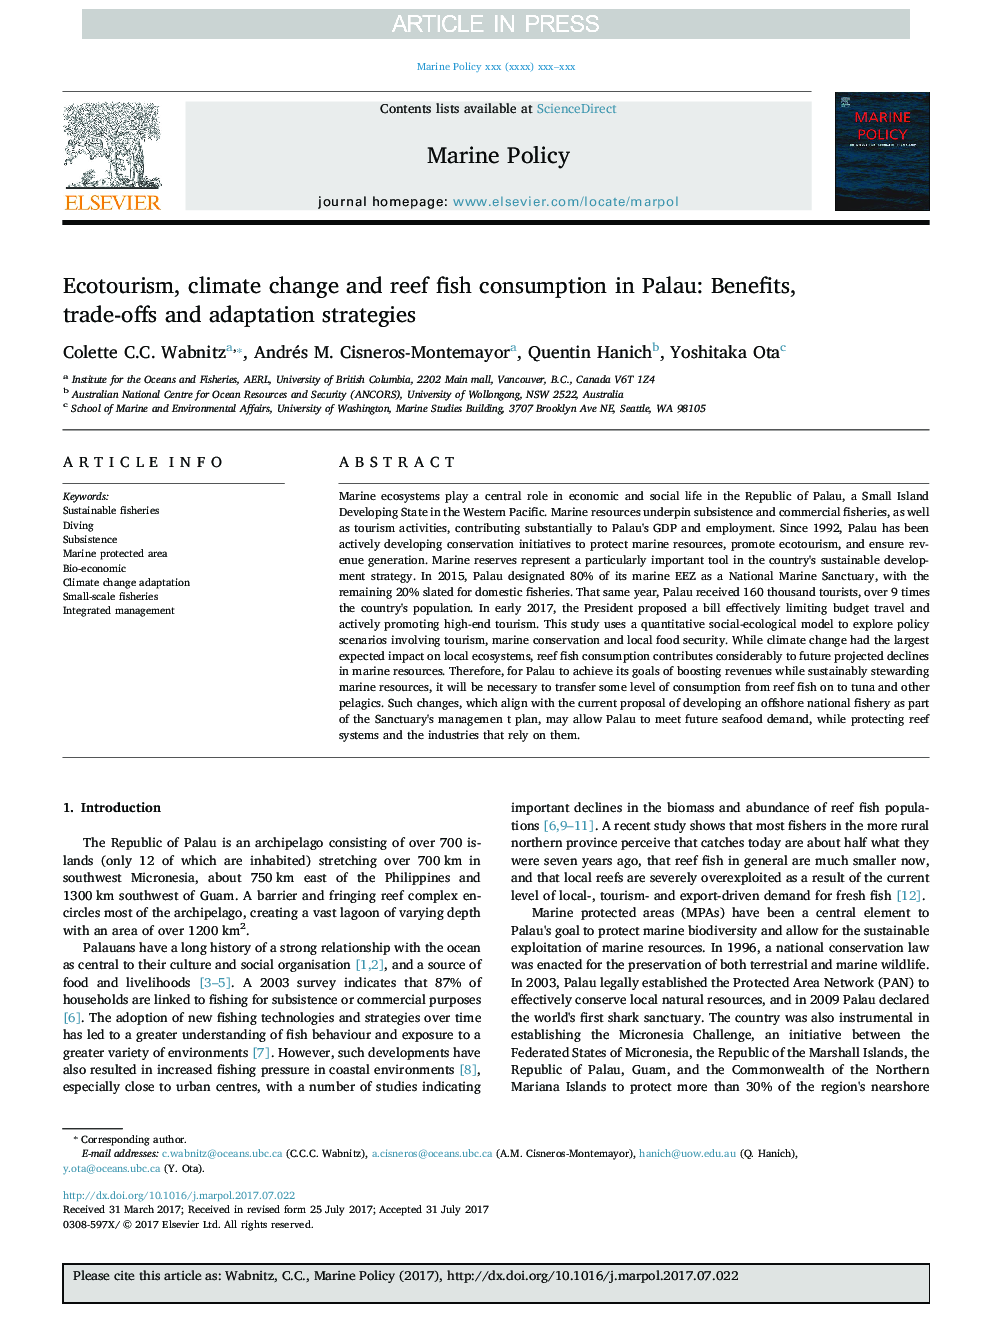 اکوتوریسم، تغییرات آب و هوایی و مصرف ماهی صخره ای در پالائو: مزایا، ترکیبات و استراتژی های انطباق 